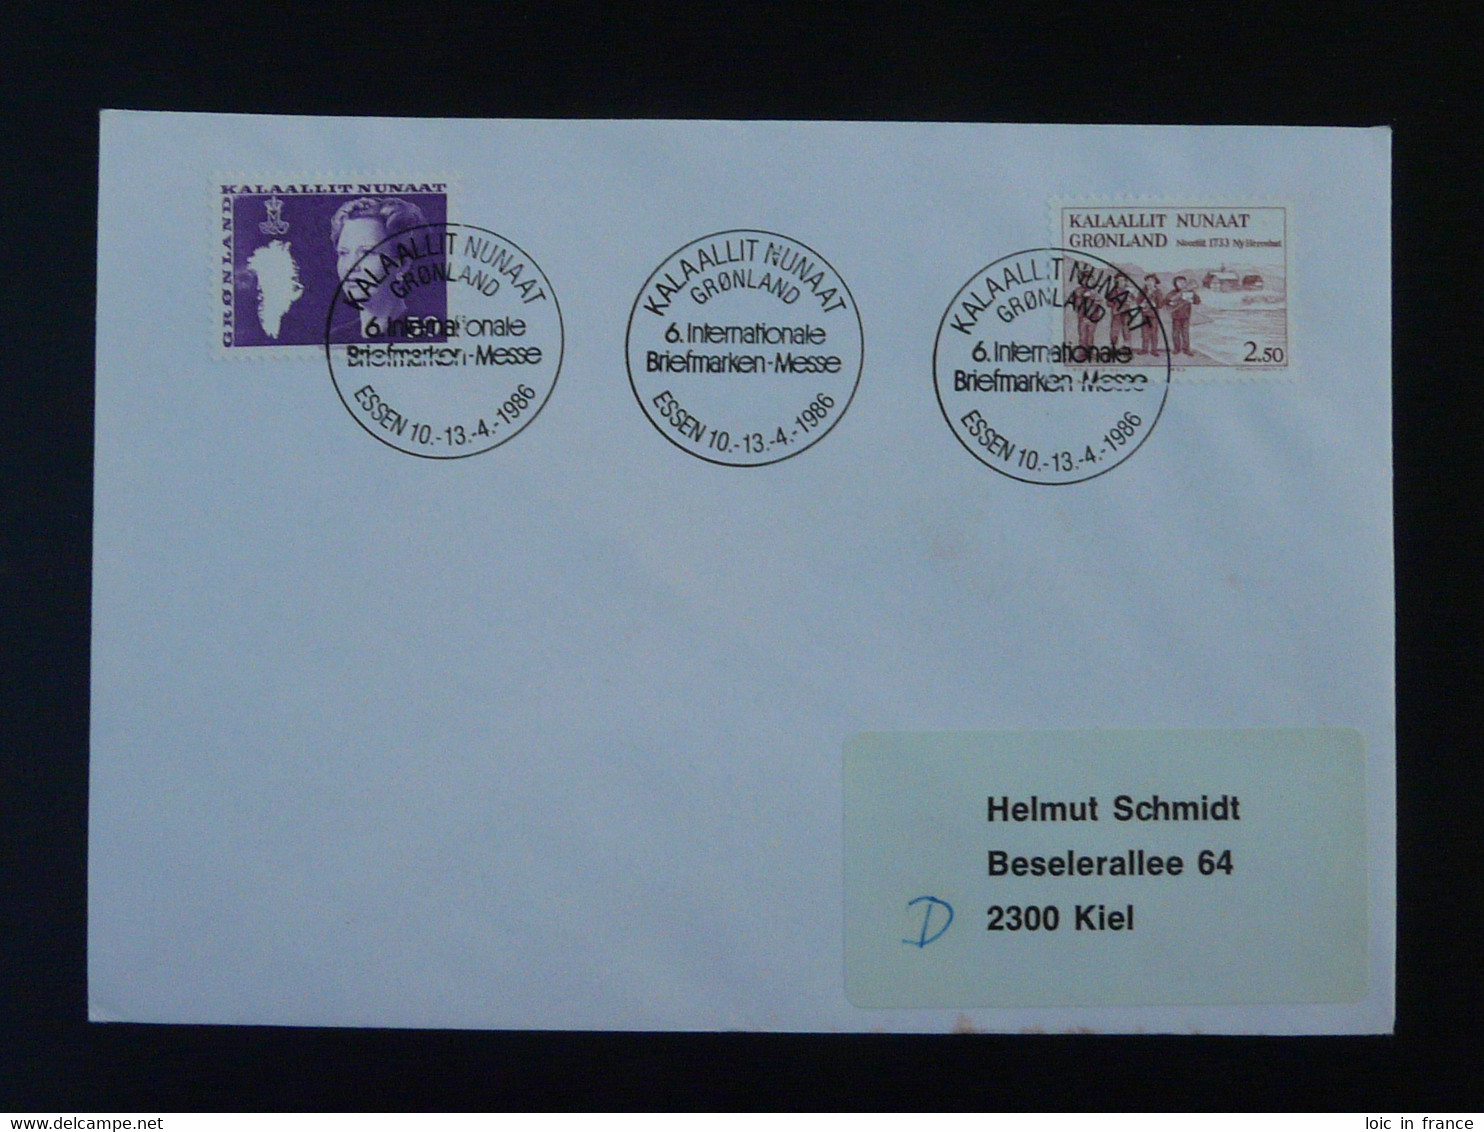 Lettre Cover Obliteration Postmark Essen Briefmarken Messe 1986 Groenland Greenland (ex 5) - Postmarks